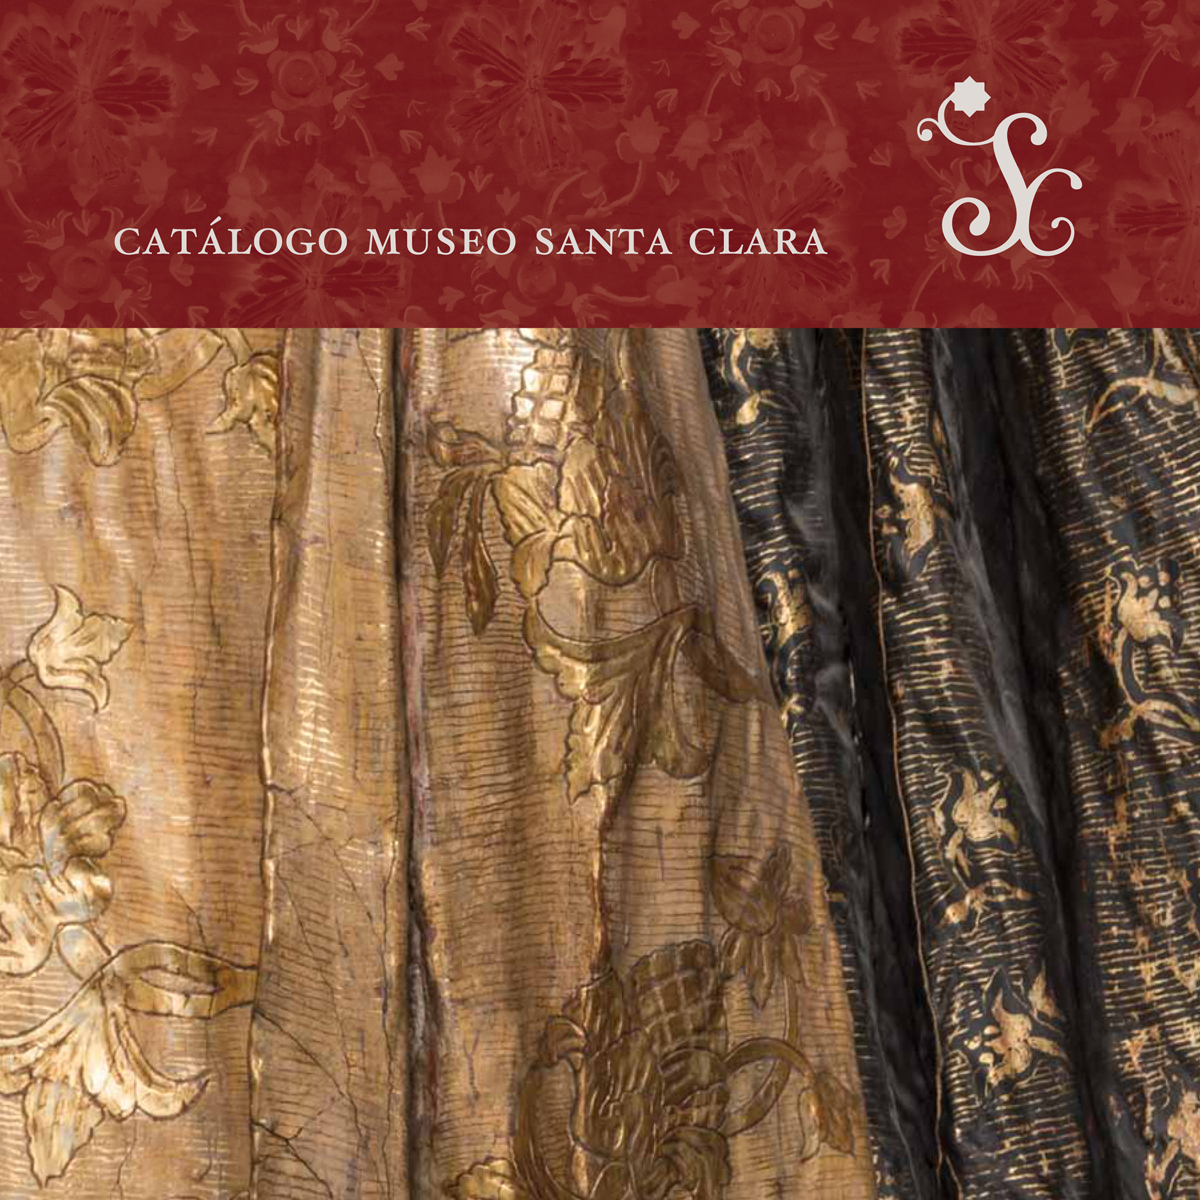 Catálogo de la colección del Museo Santa Clara